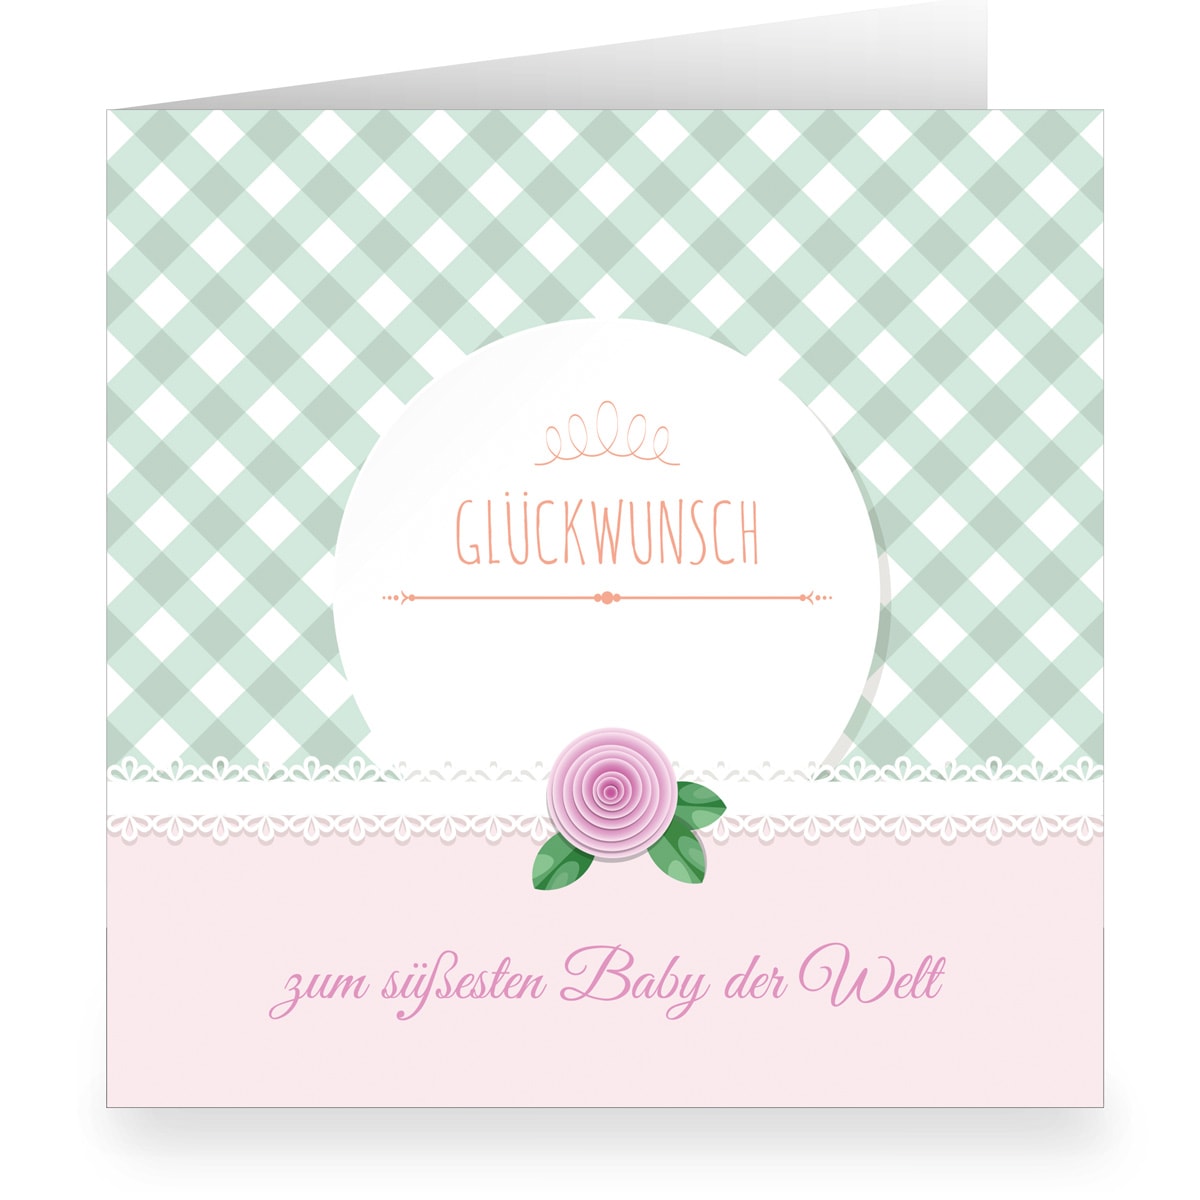 Kartenkaufrausch: Babykarte mit Vichy Karo aus unserer Geburtstags Papeterie in rosa